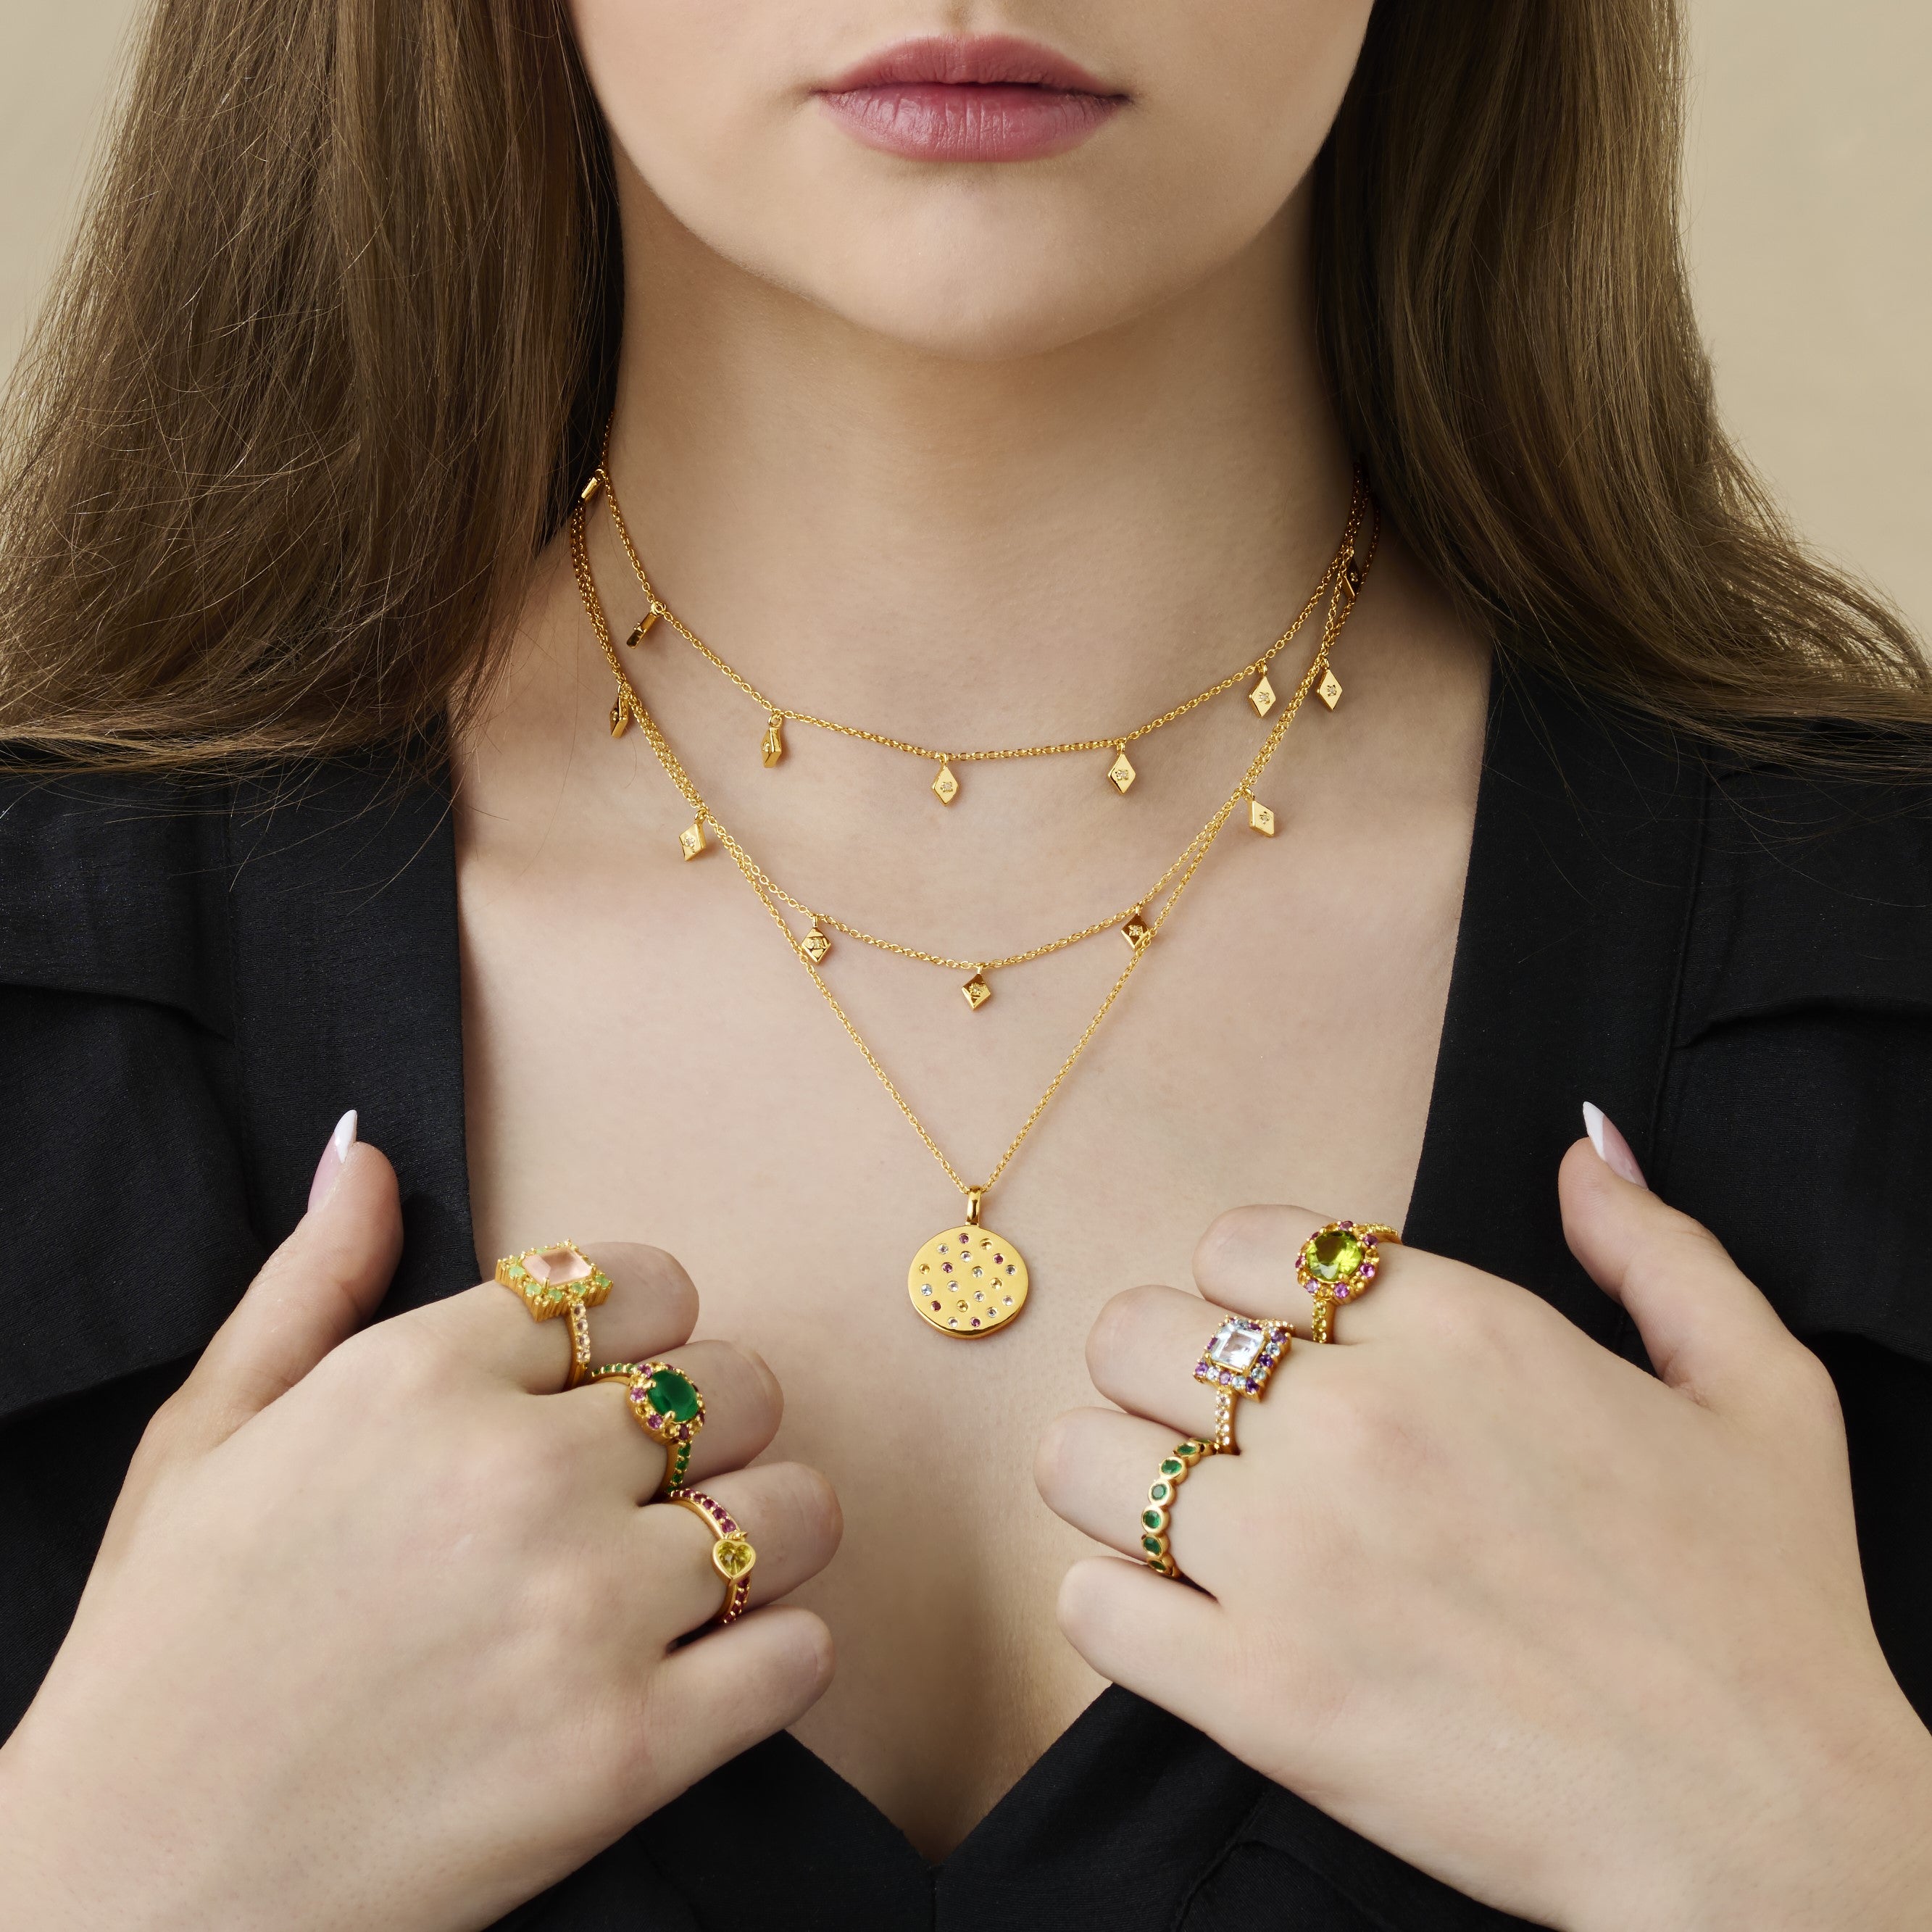 Aquamarine and Apatite Gemstone Necklace & Bracelet Set - Made to Order -  Aquamarine Gemstone Silver Jewellery